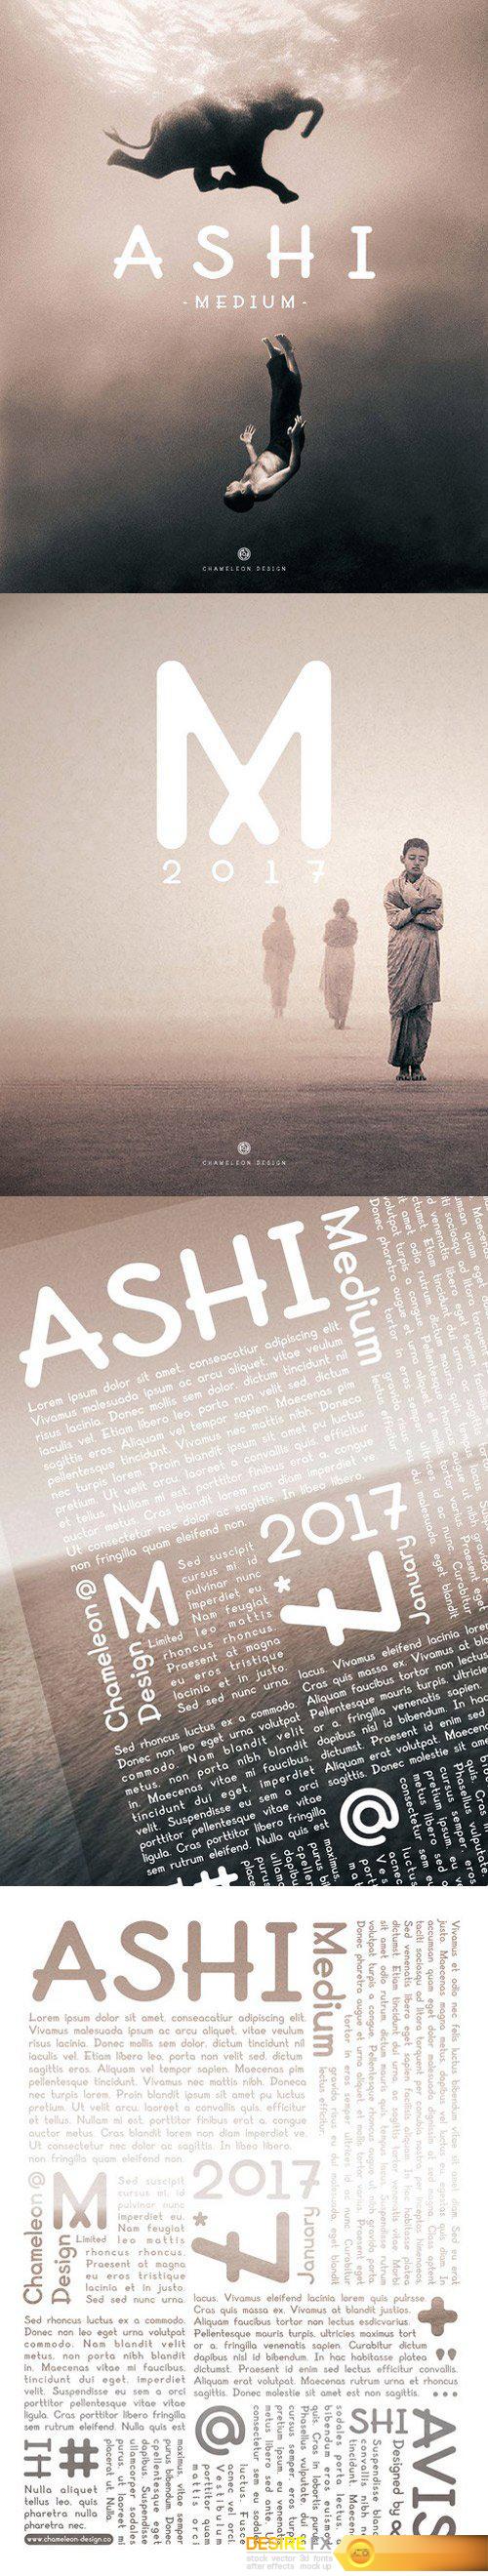 AShi - Medium Font